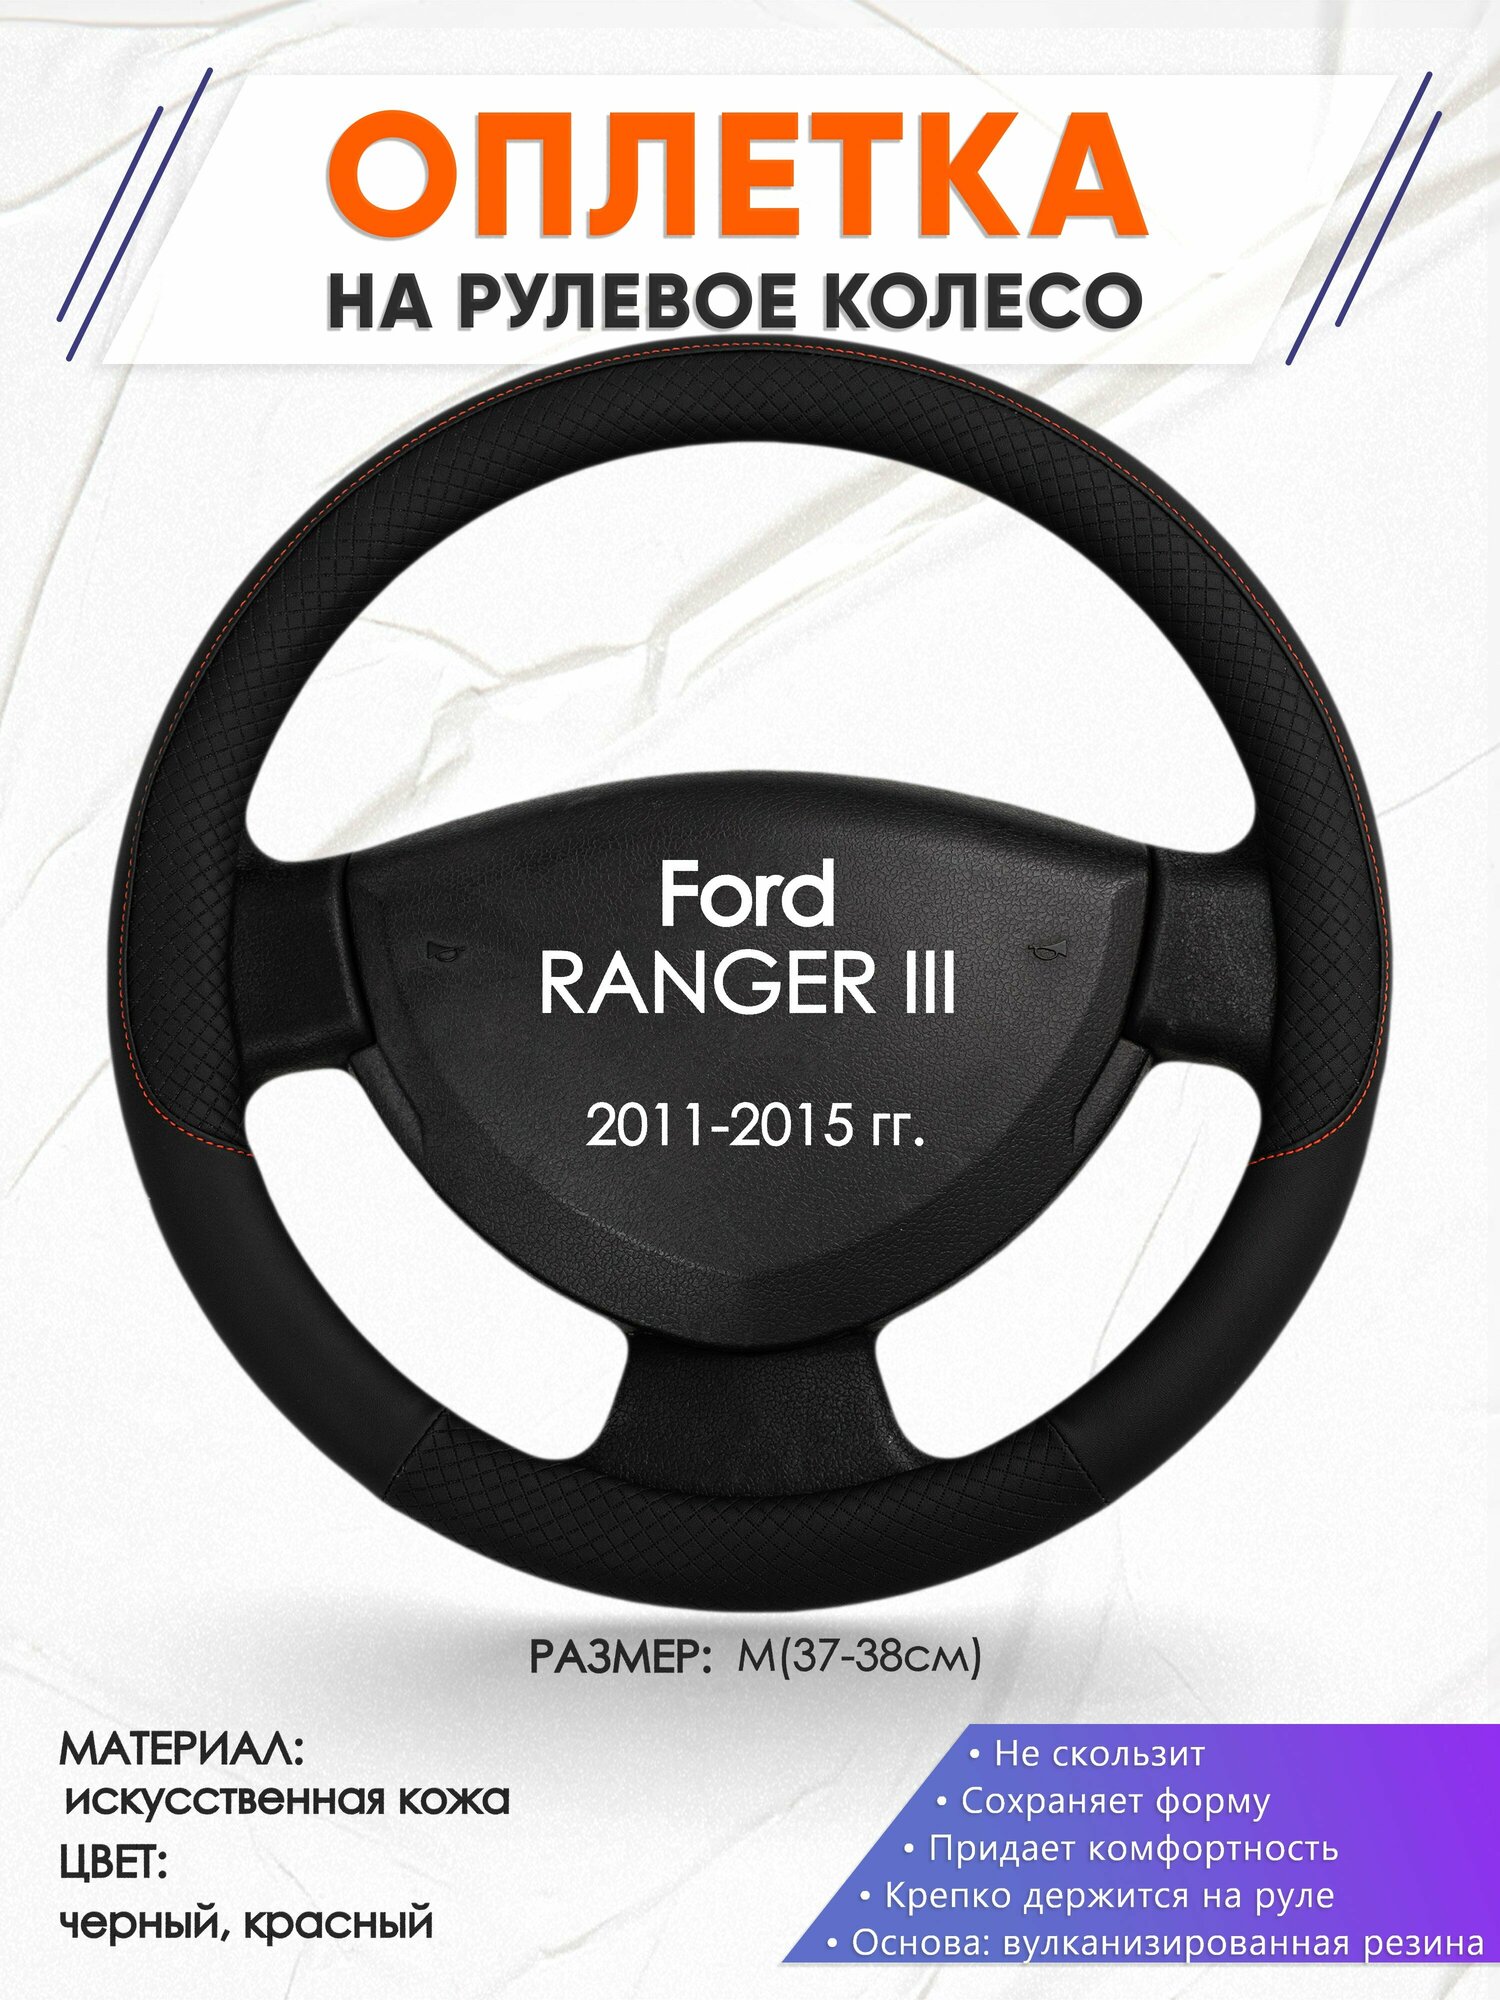 Оплетка наруль для Ford RANGER III(Форд Рангер) 2011-2015 годов выпуска, размер M(37-38см), Искусственная кожа 18